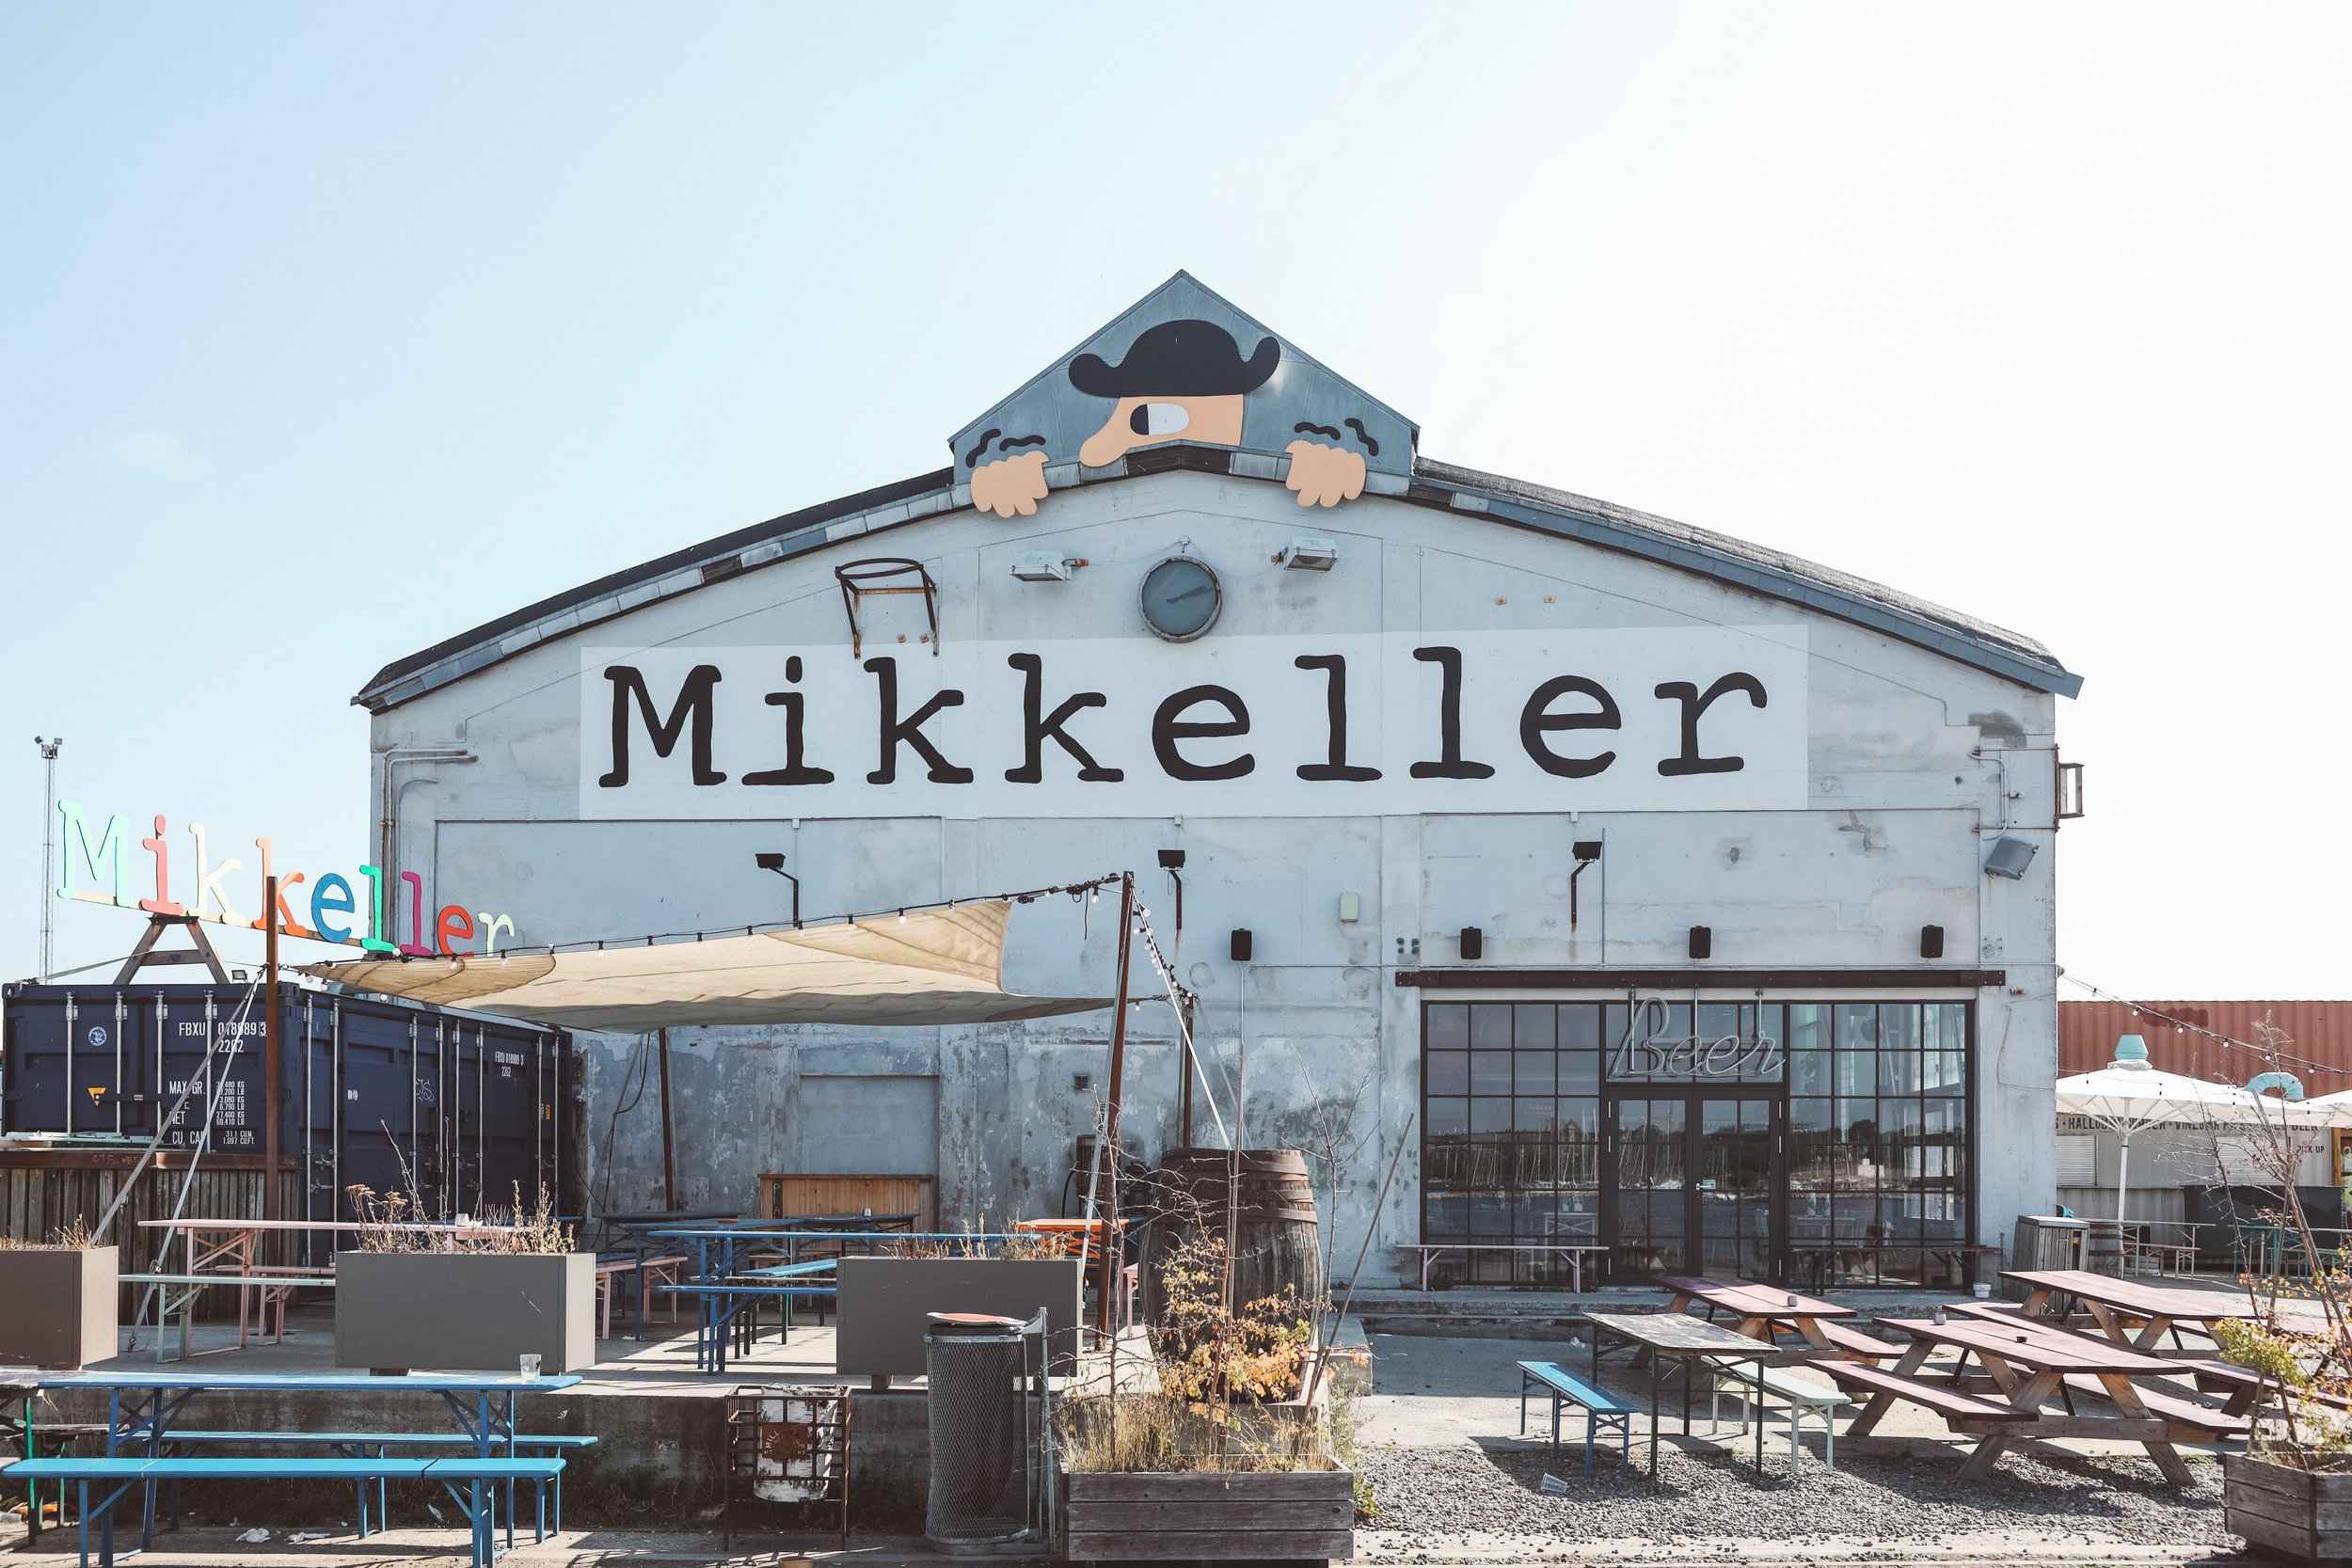 Mikkeller - Copenhagen - Denmark